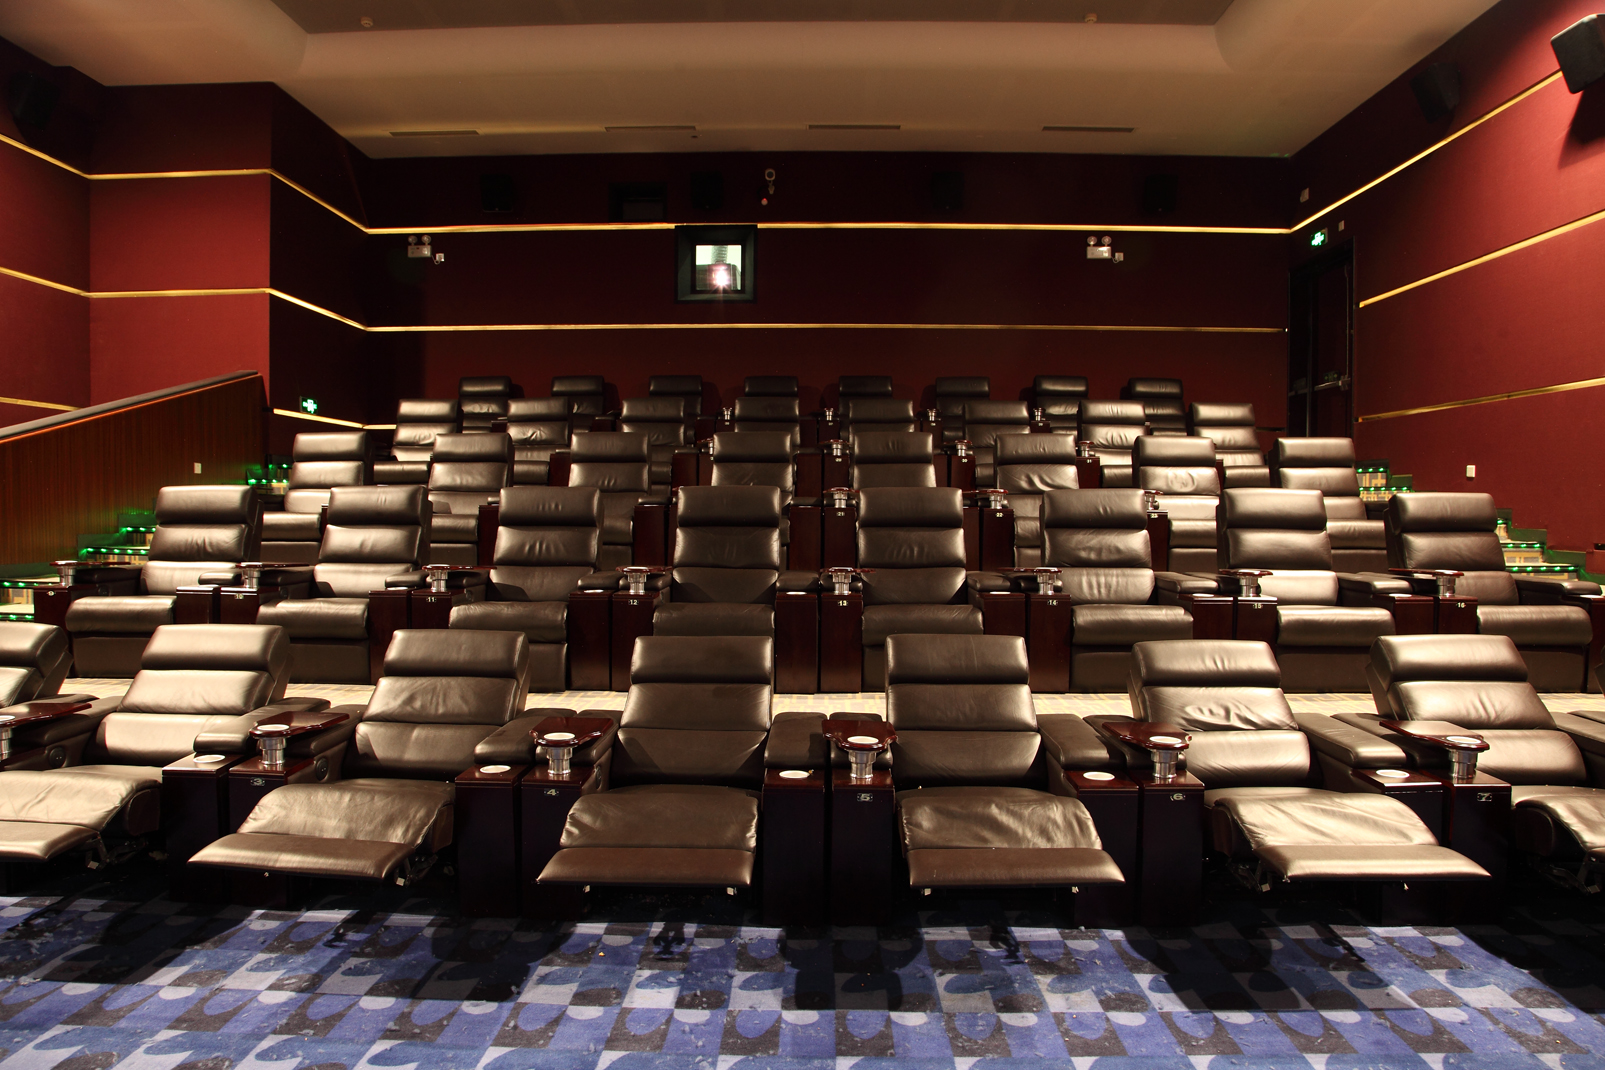  cinema chairs 